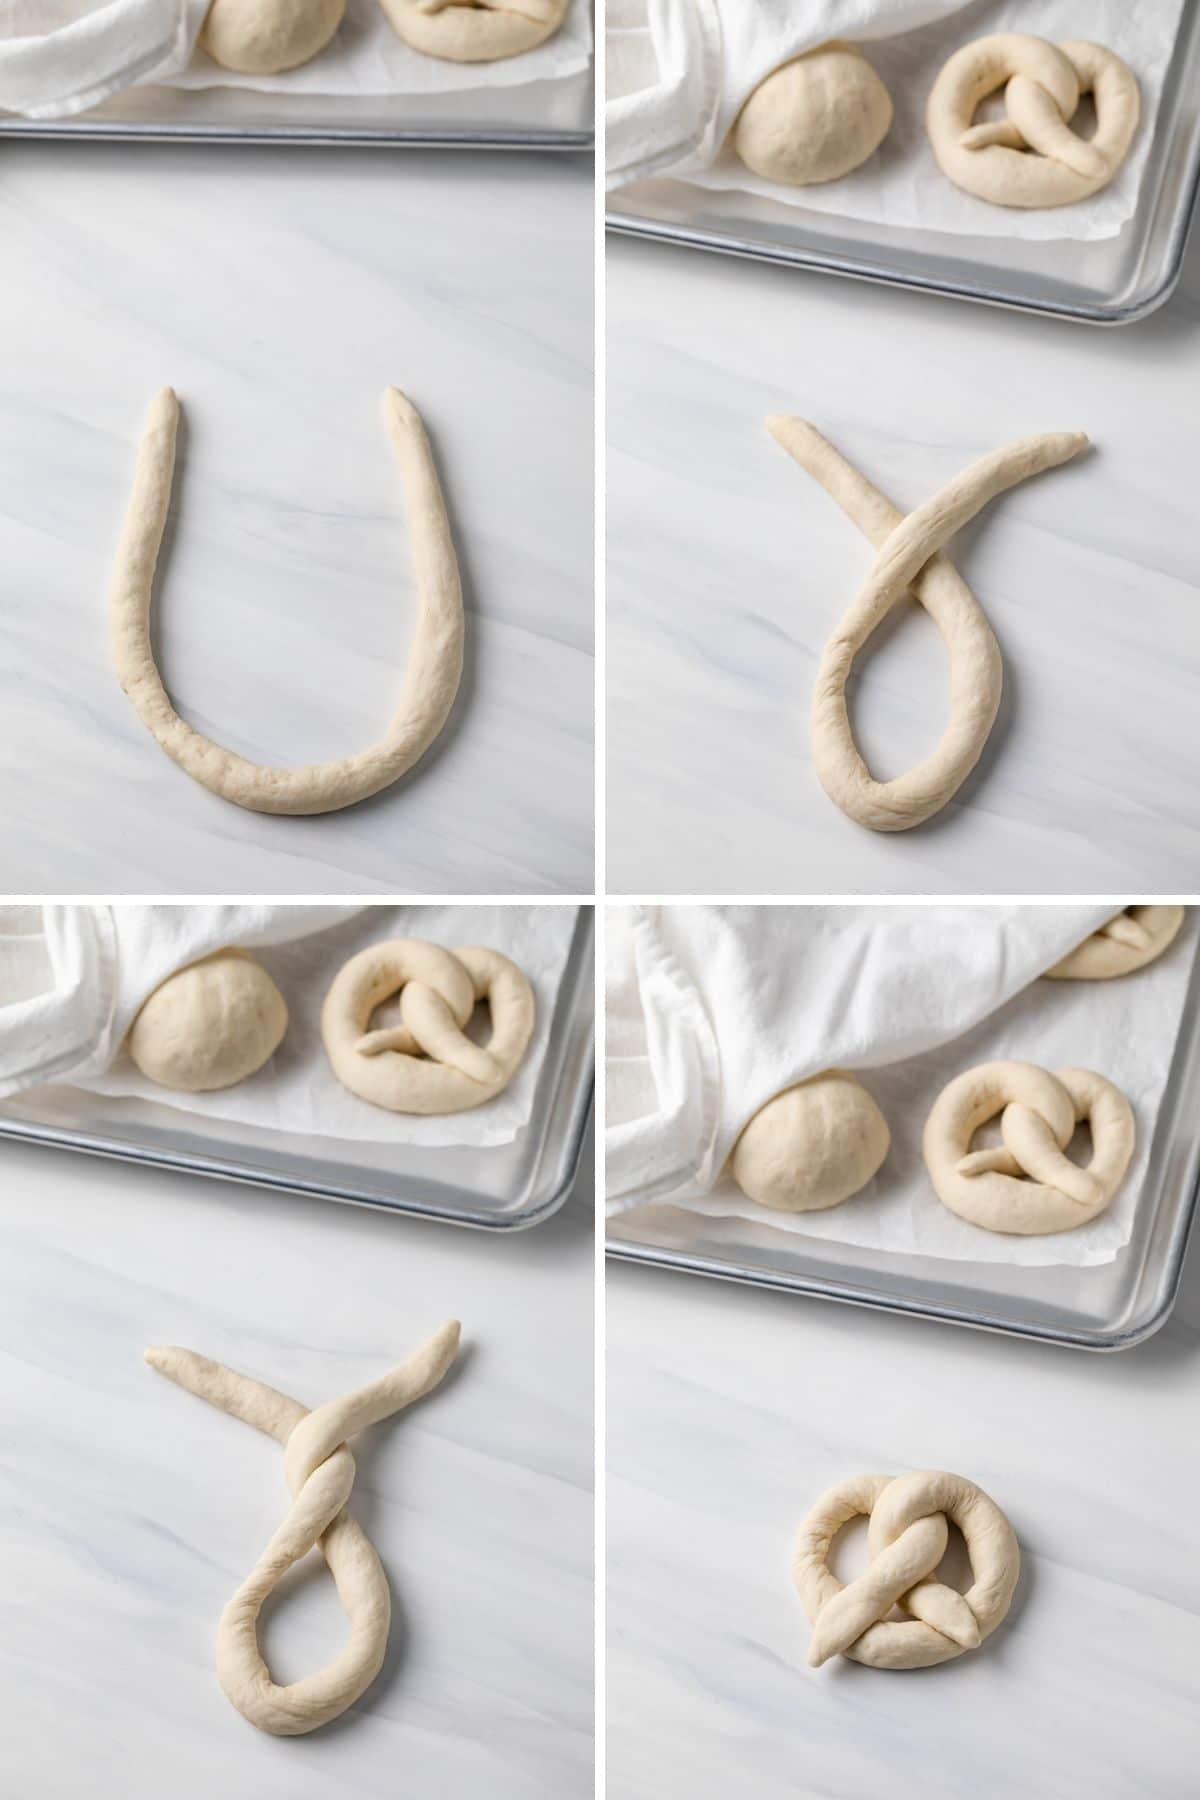 process shots showing how to shape pretzels